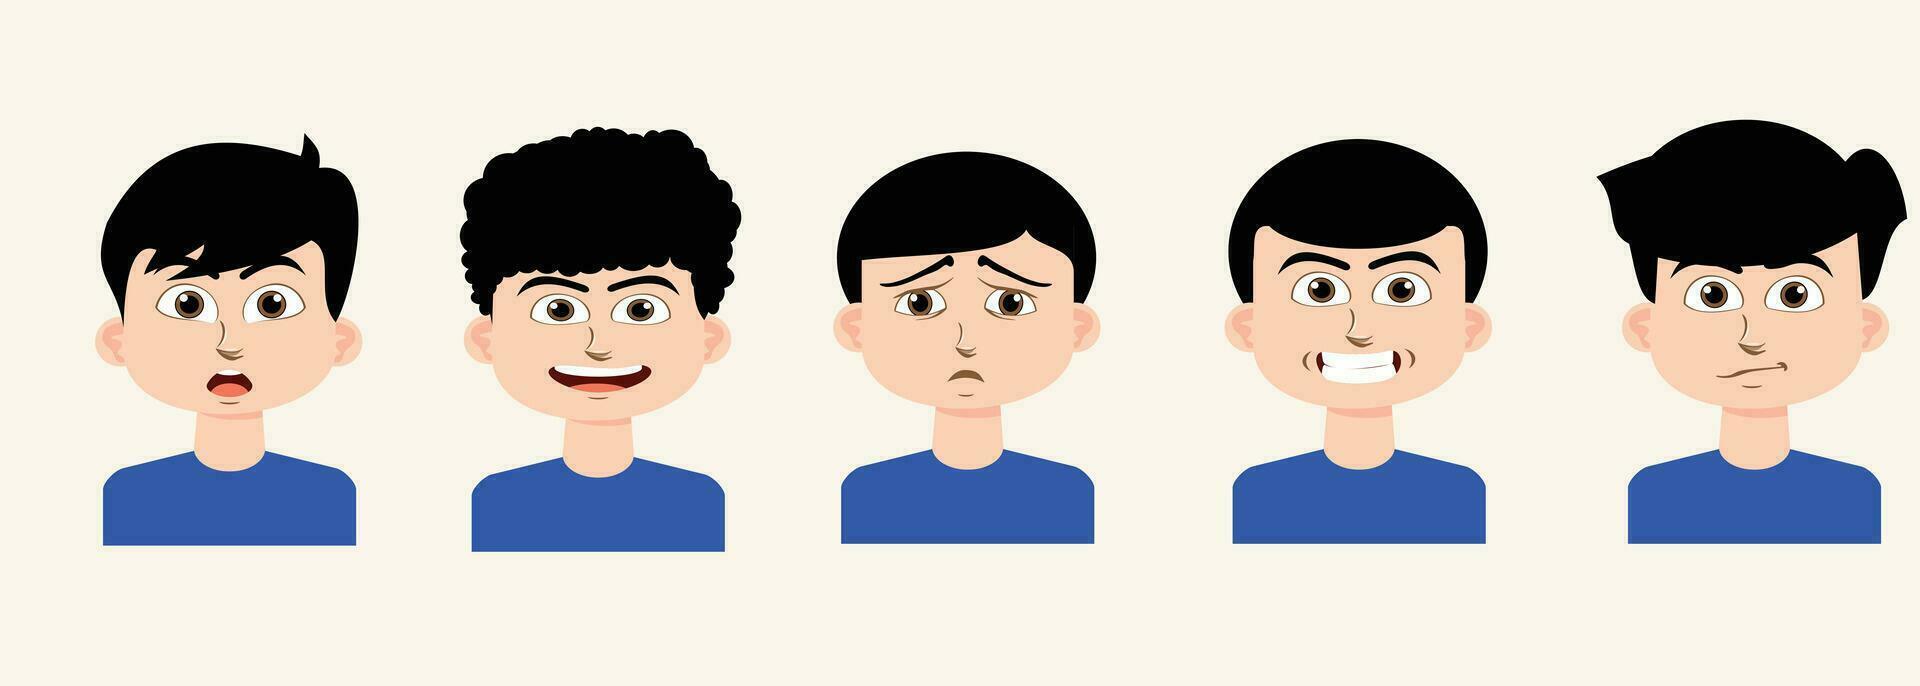 conjunto de niños emociones facial expresiones dibujos animados chico avatares. vector